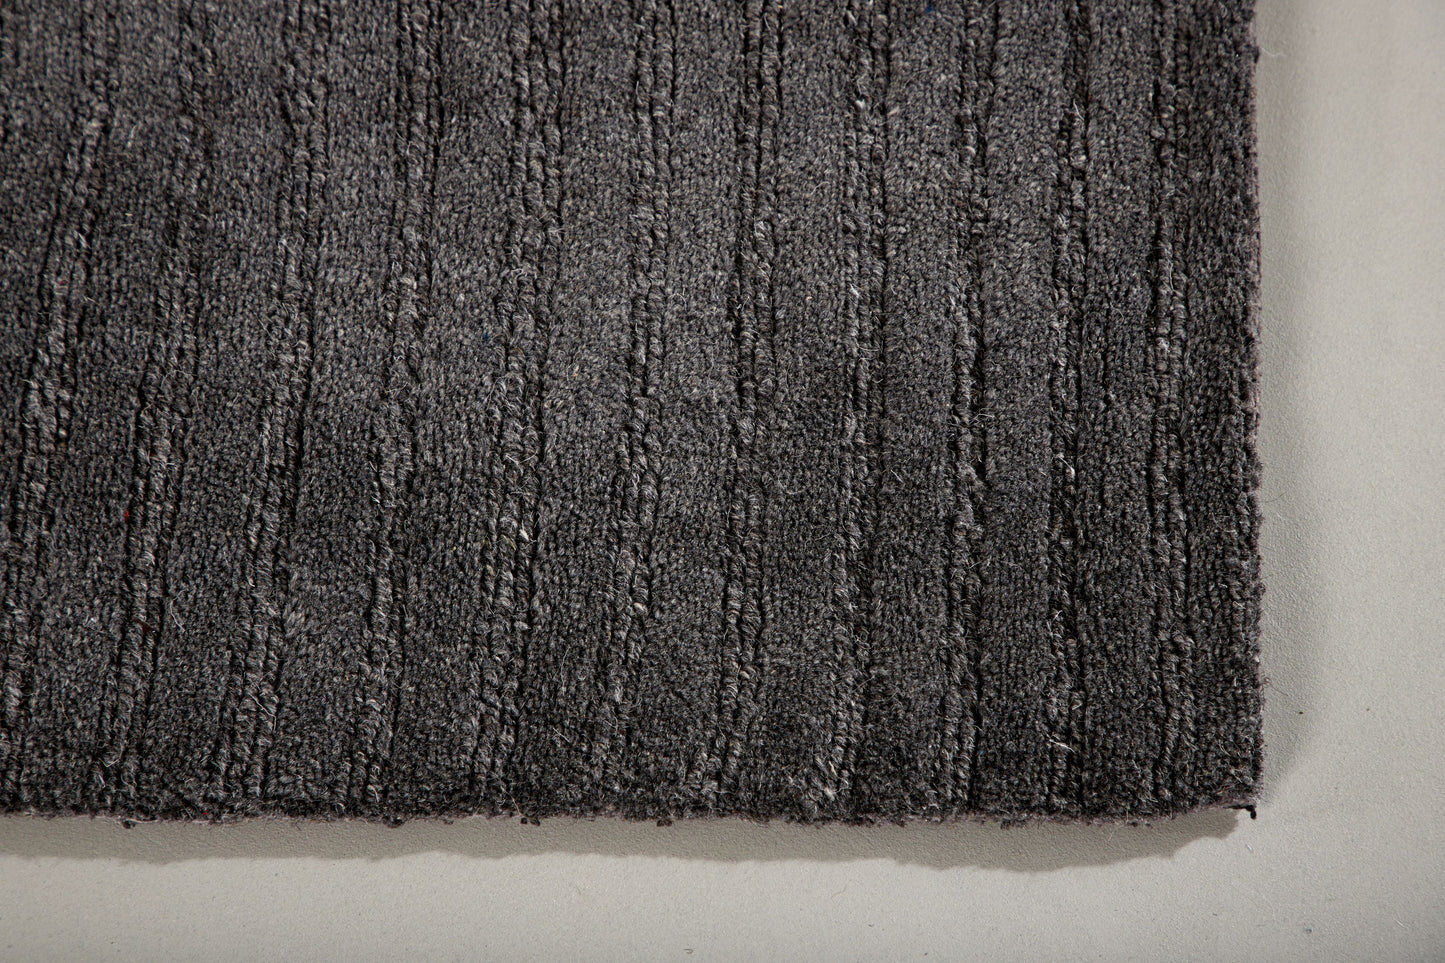 Milton - Gulvtæppe, Uld/polyester/bomuld - 200*70, Rektangulær, Mørkegrå